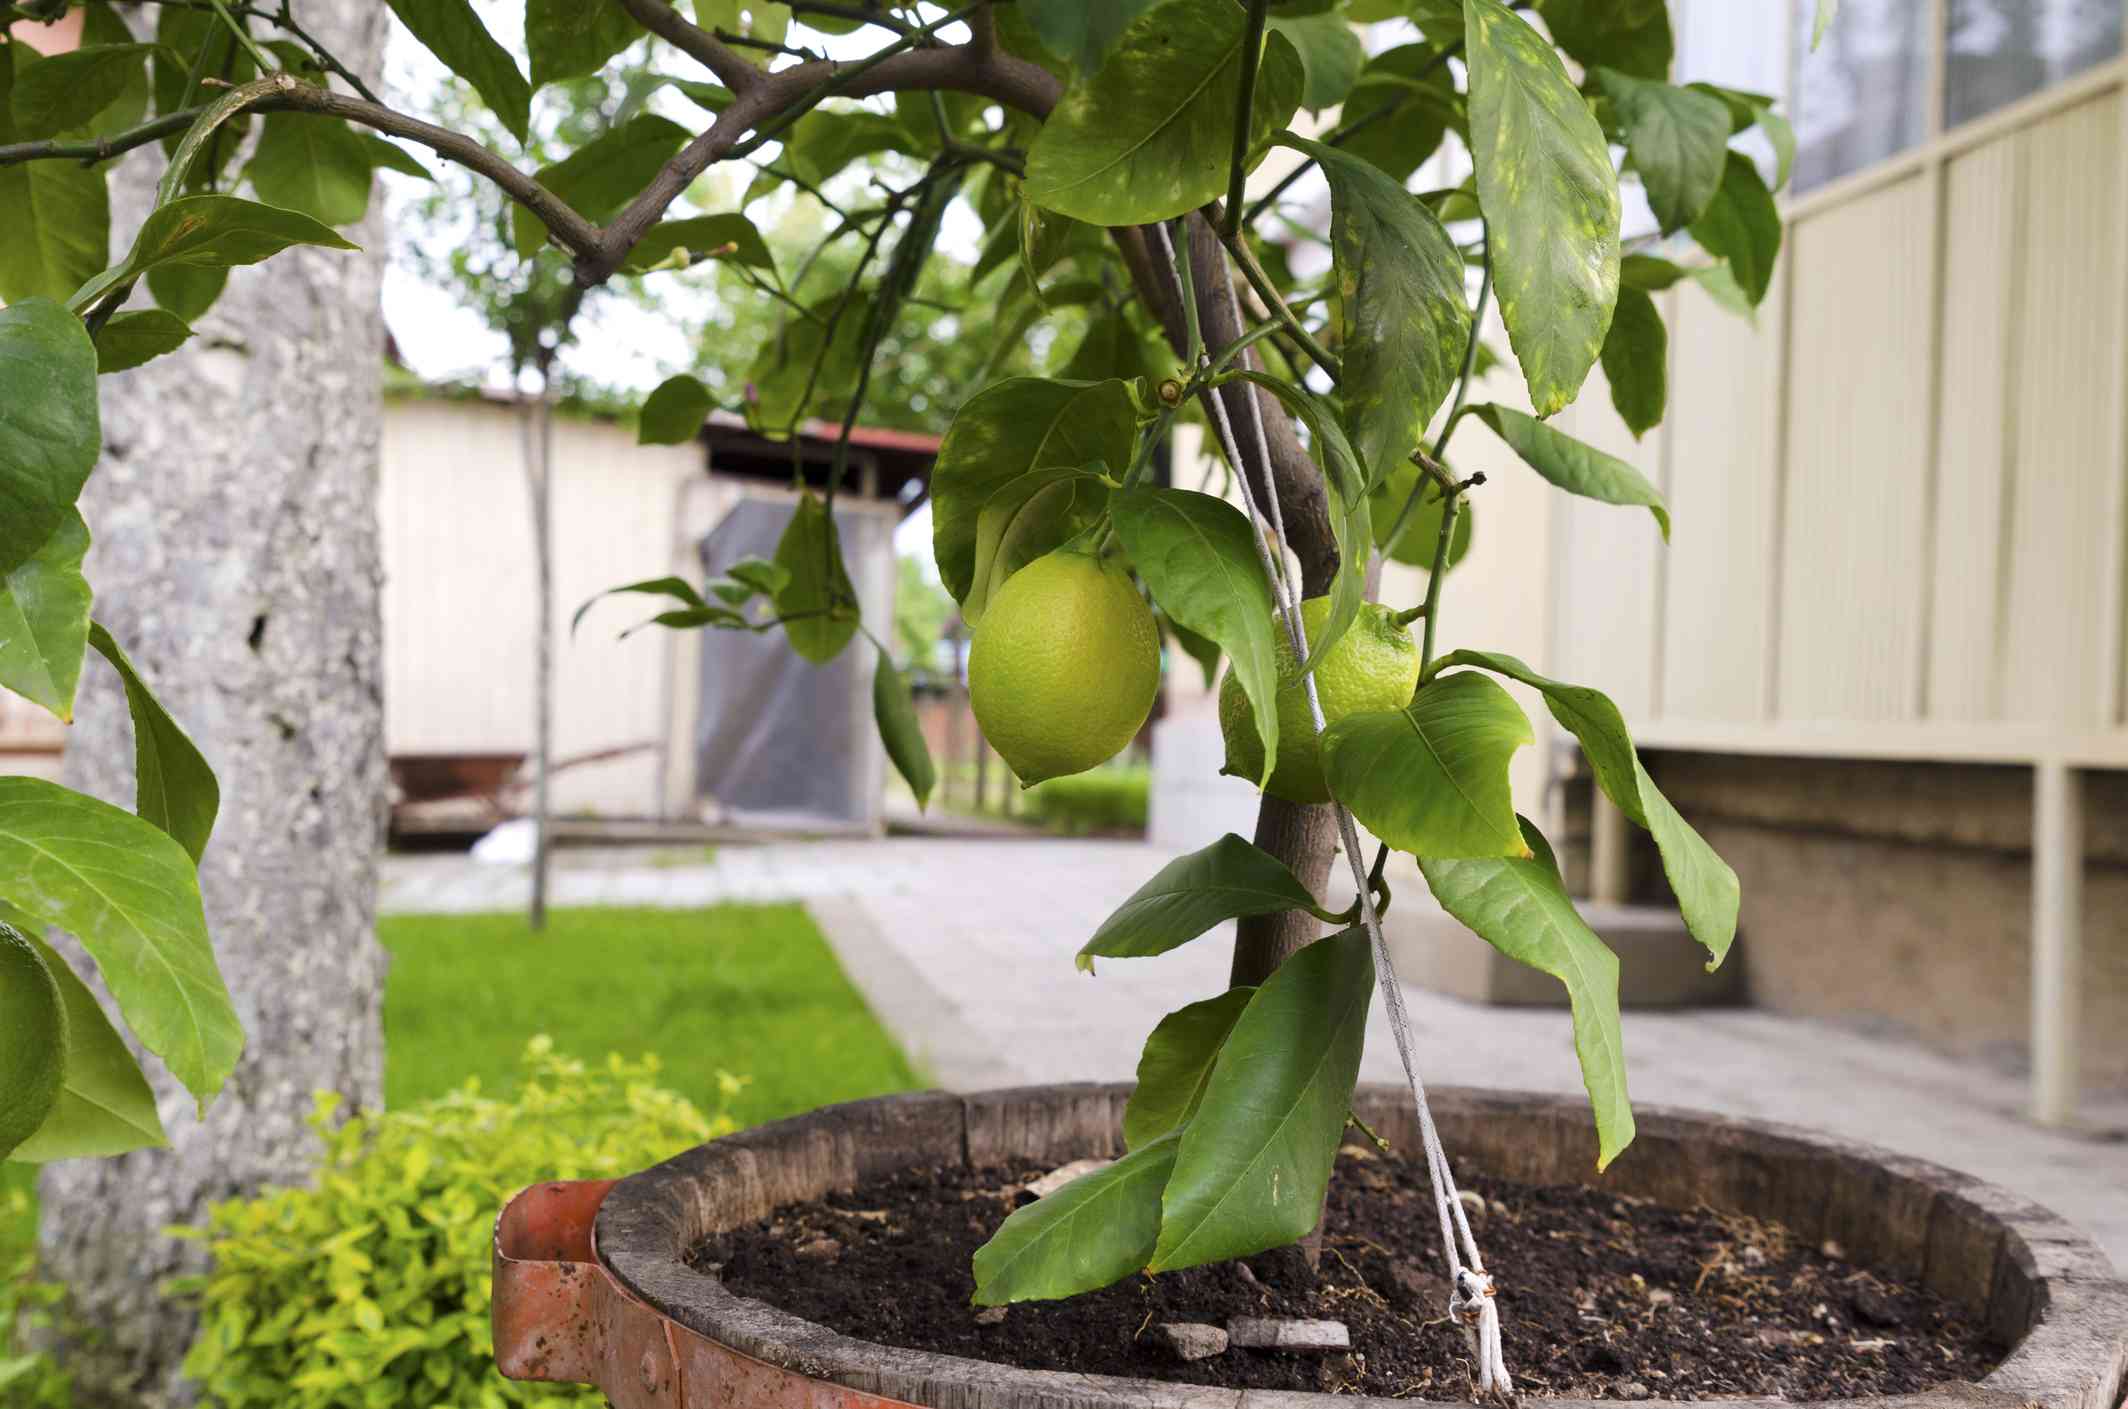 Primer plano de un limonero en una maceta en un jardín exterior